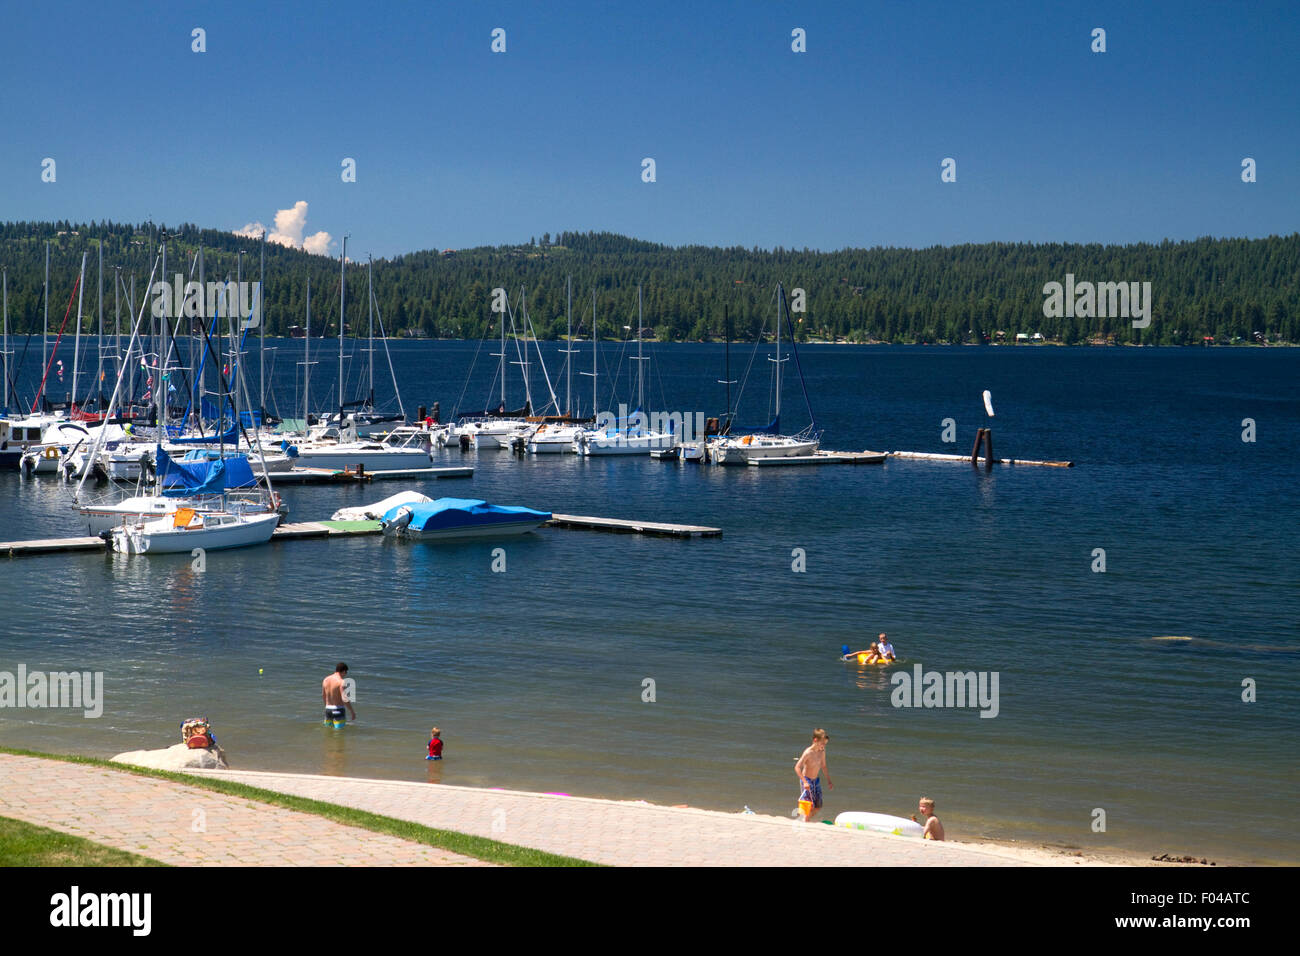 Barca marina e la spiaggia al lago Payette, McCall, Idaho, Stati Uniti d'America. Foto Stock